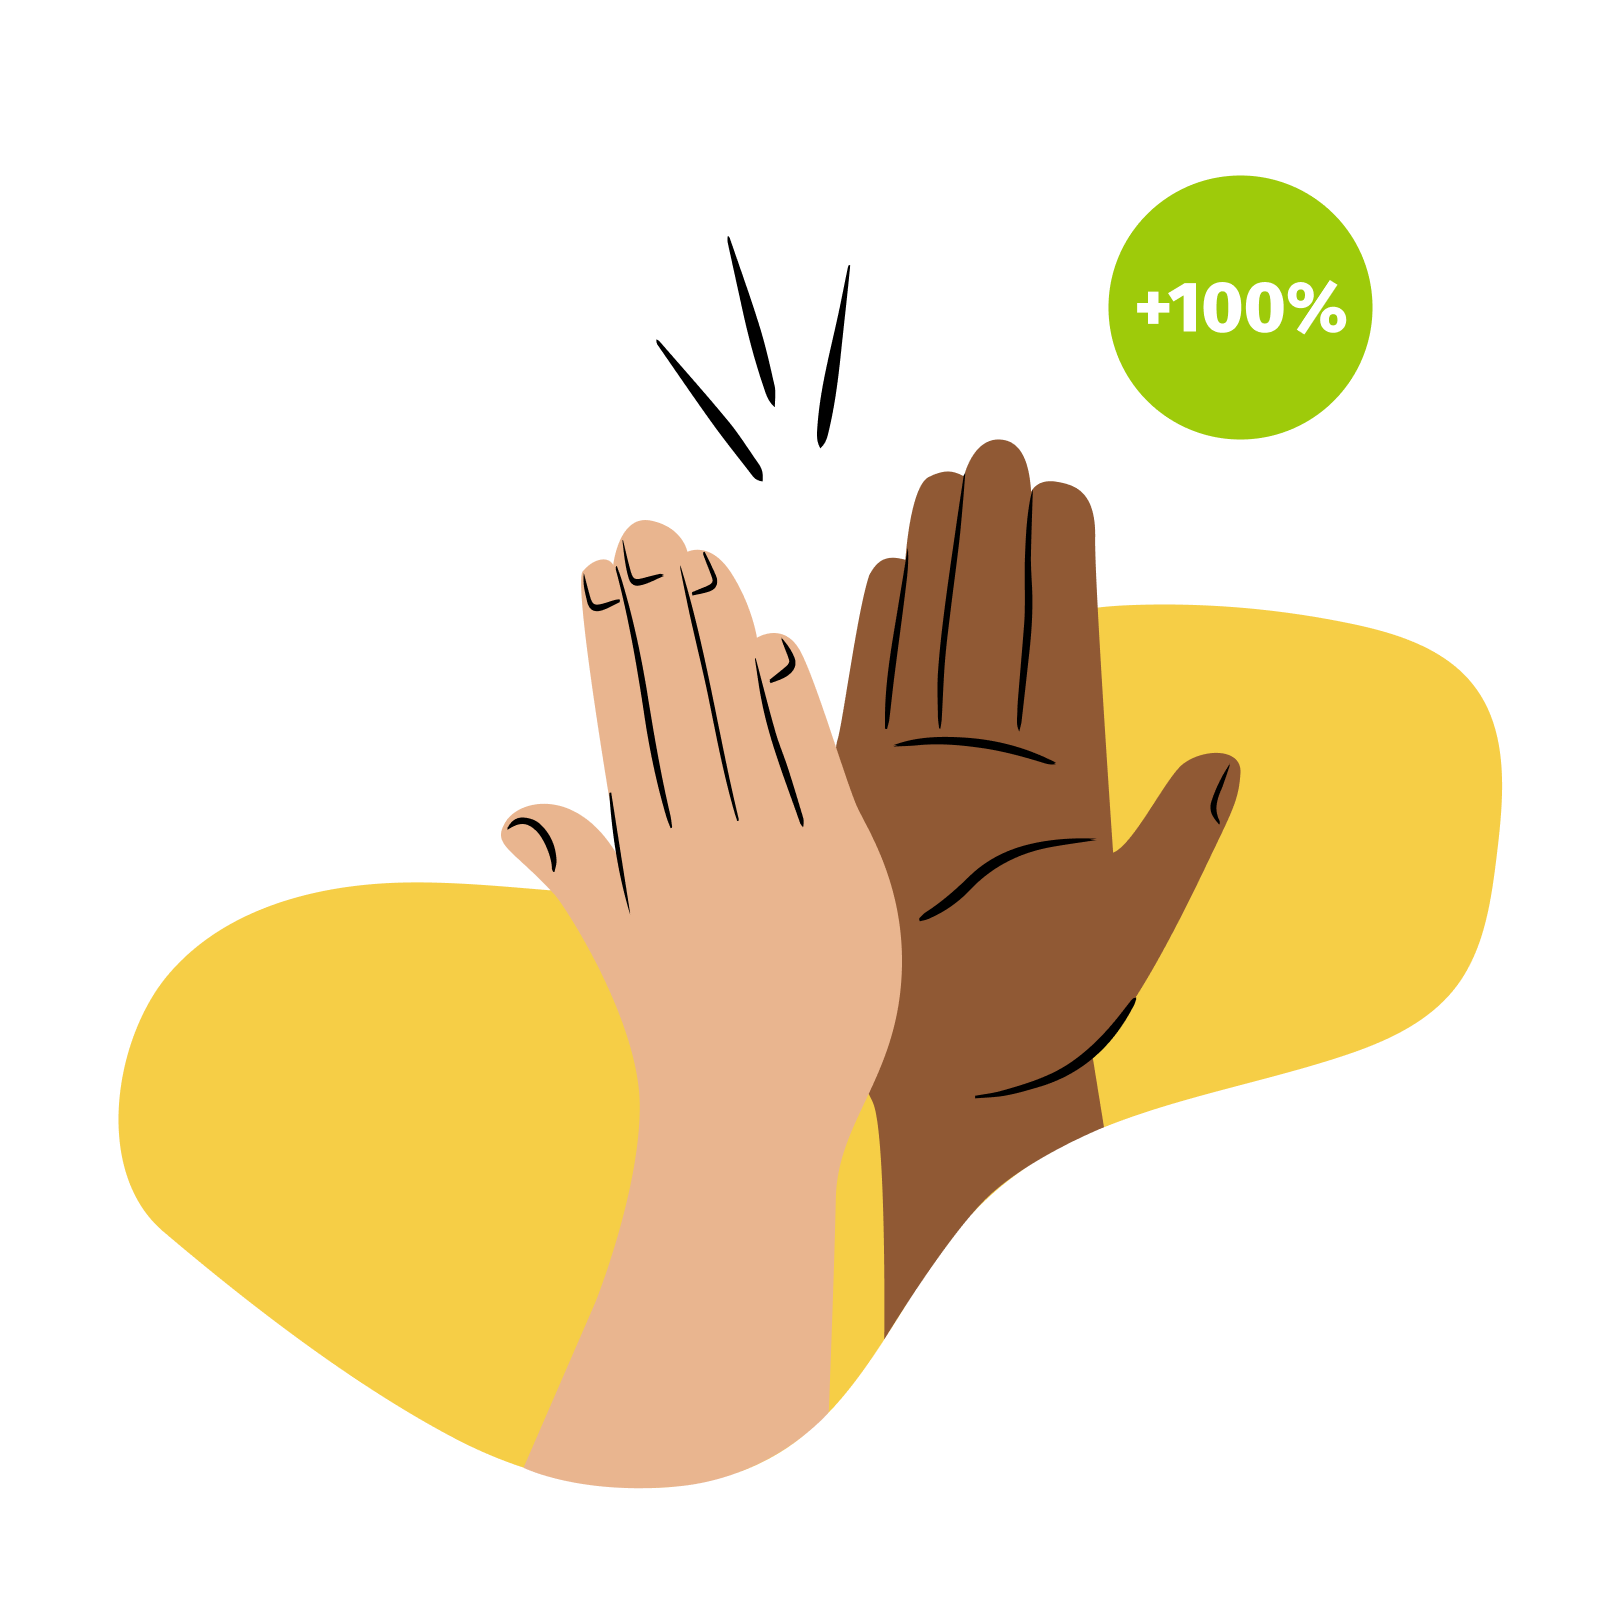 Eine illustrierte Grafik, die einklatschende Hände zeigt. In der rechten Ecke ist eine organische Form, in der '+100 %' steht.